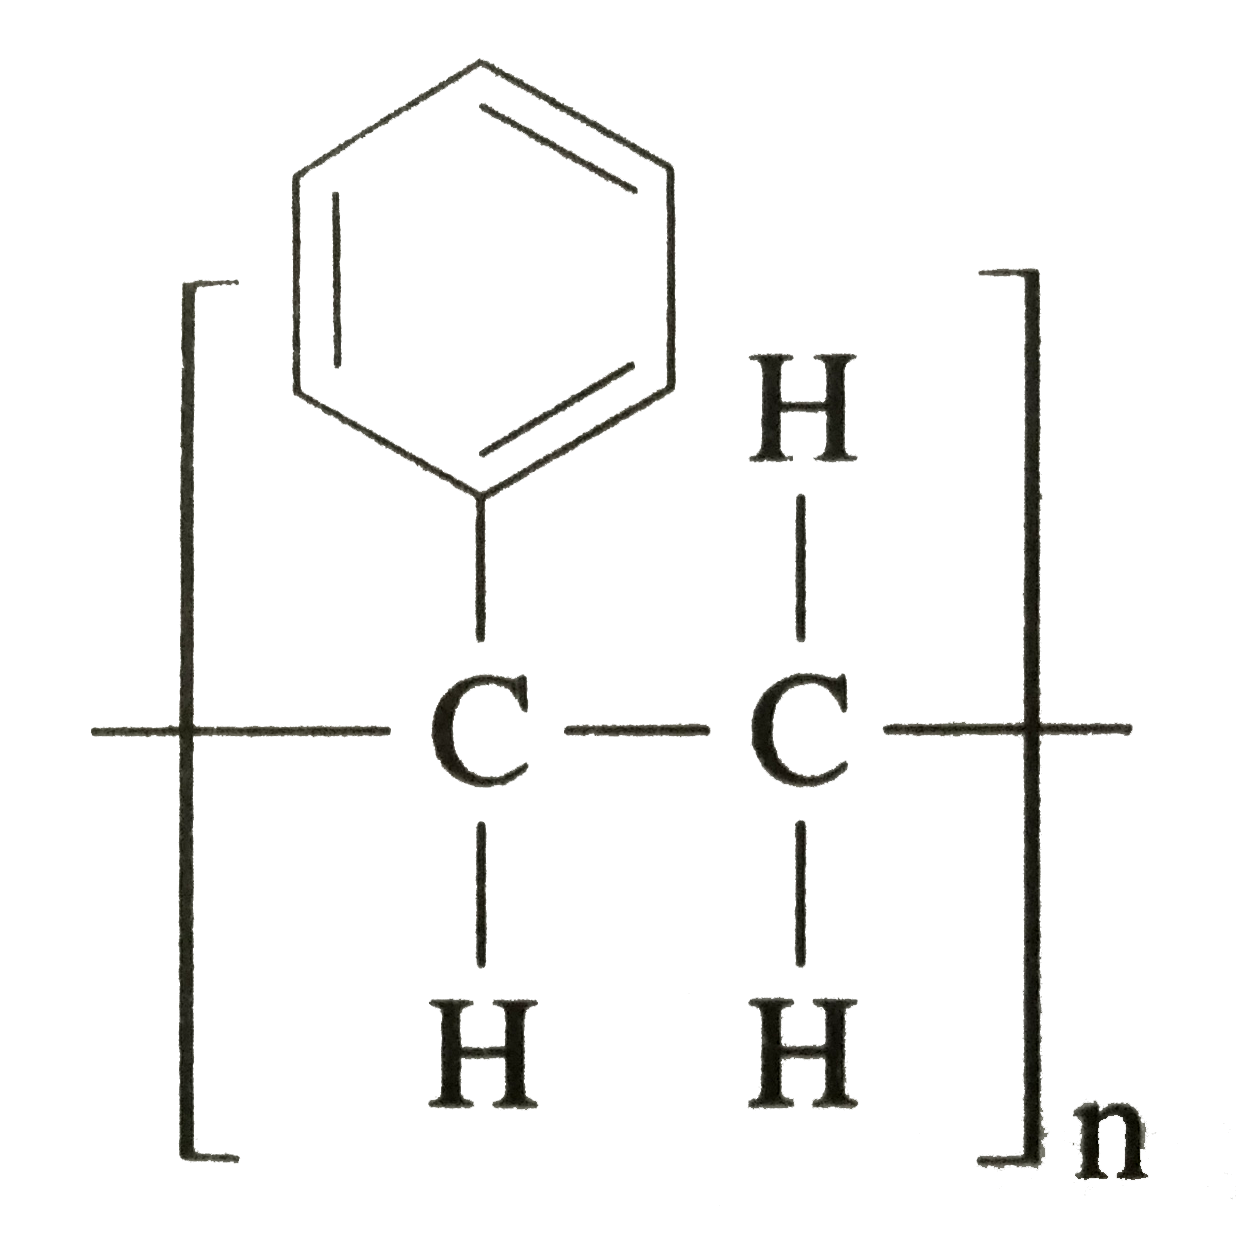 Polystyrene Molecule